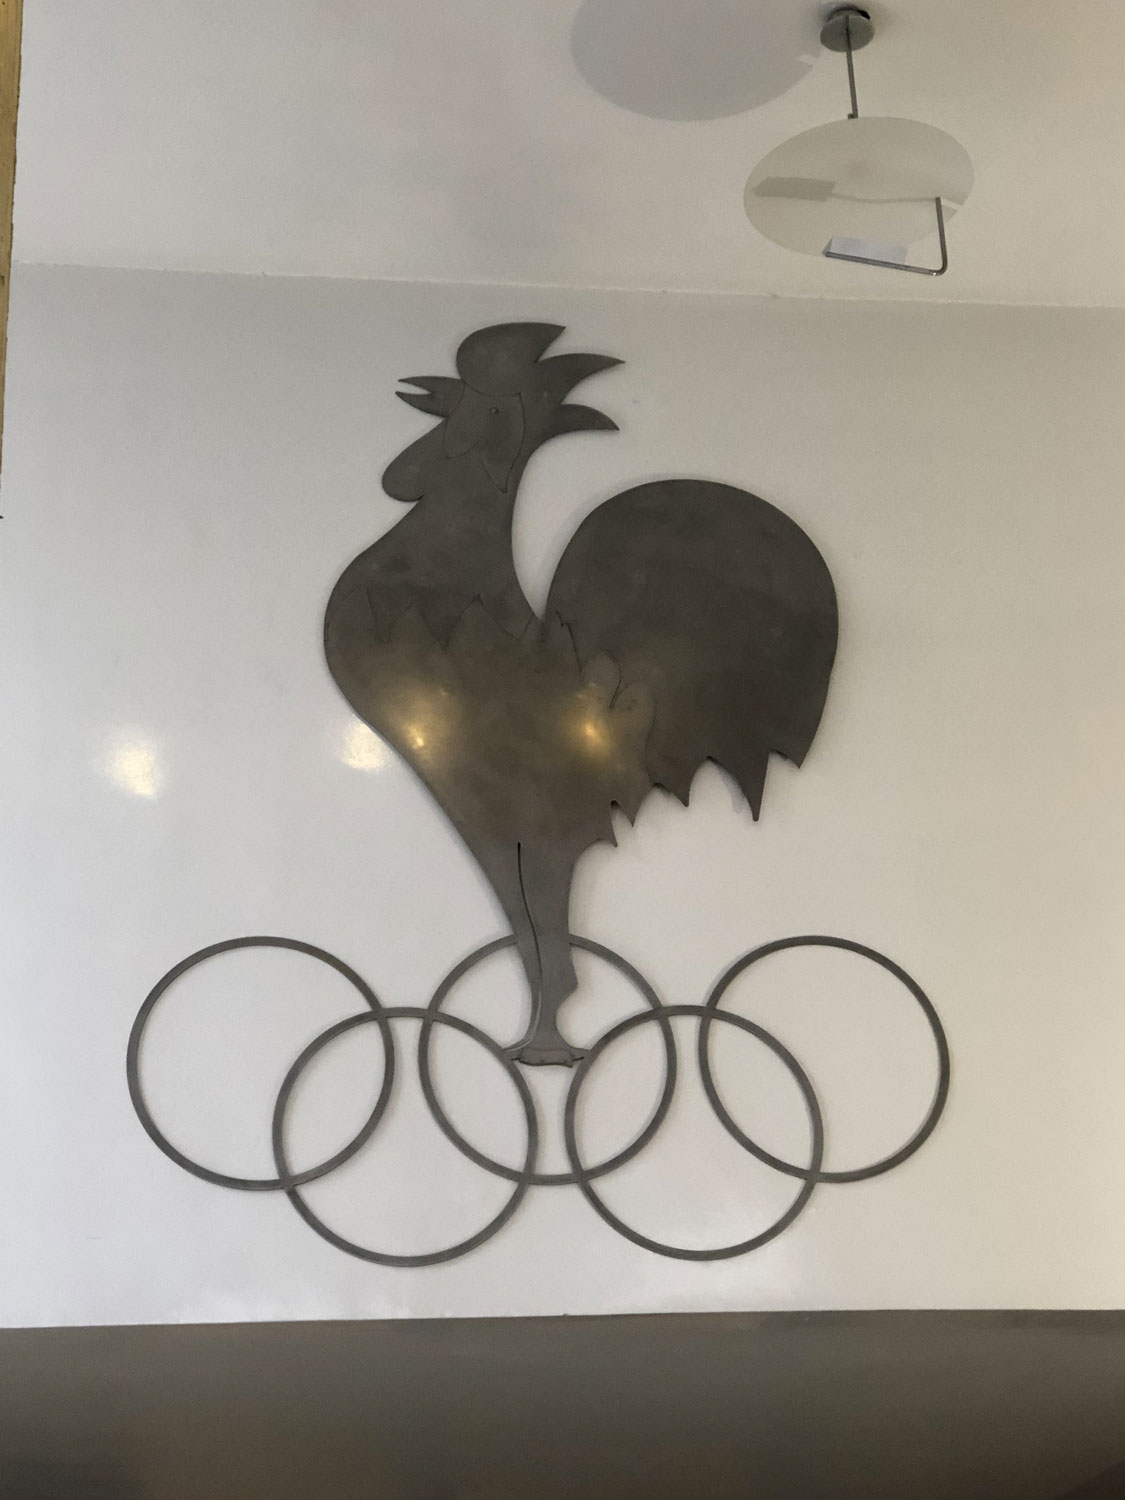 Le coq est l’animal qui représente la France et les 5 anneaux entrelacés, le symbole des Jeux Olympiques. Donc les deux sont associés pour le Comité National Olympique Sportif Français © Globe Reporters